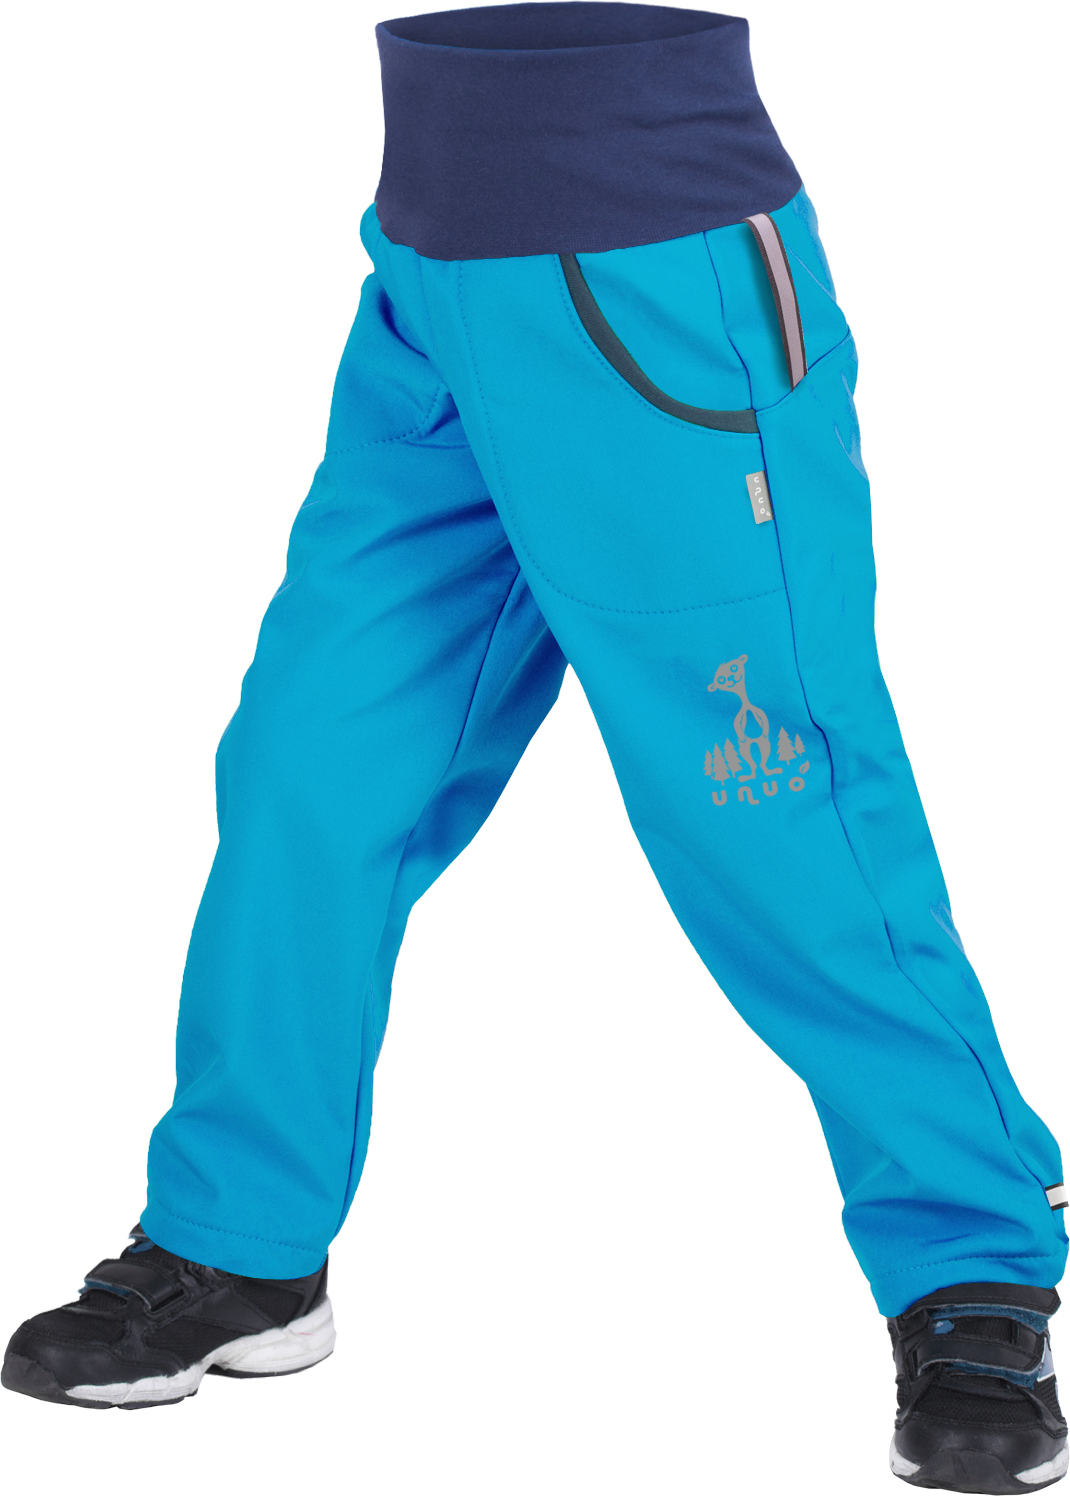 Dětské softshellové kalhoty UNUO s fleecem Tyrkysové + reflexní obrázek Evžen (Softshell kids trousers) Velikost: 128/134